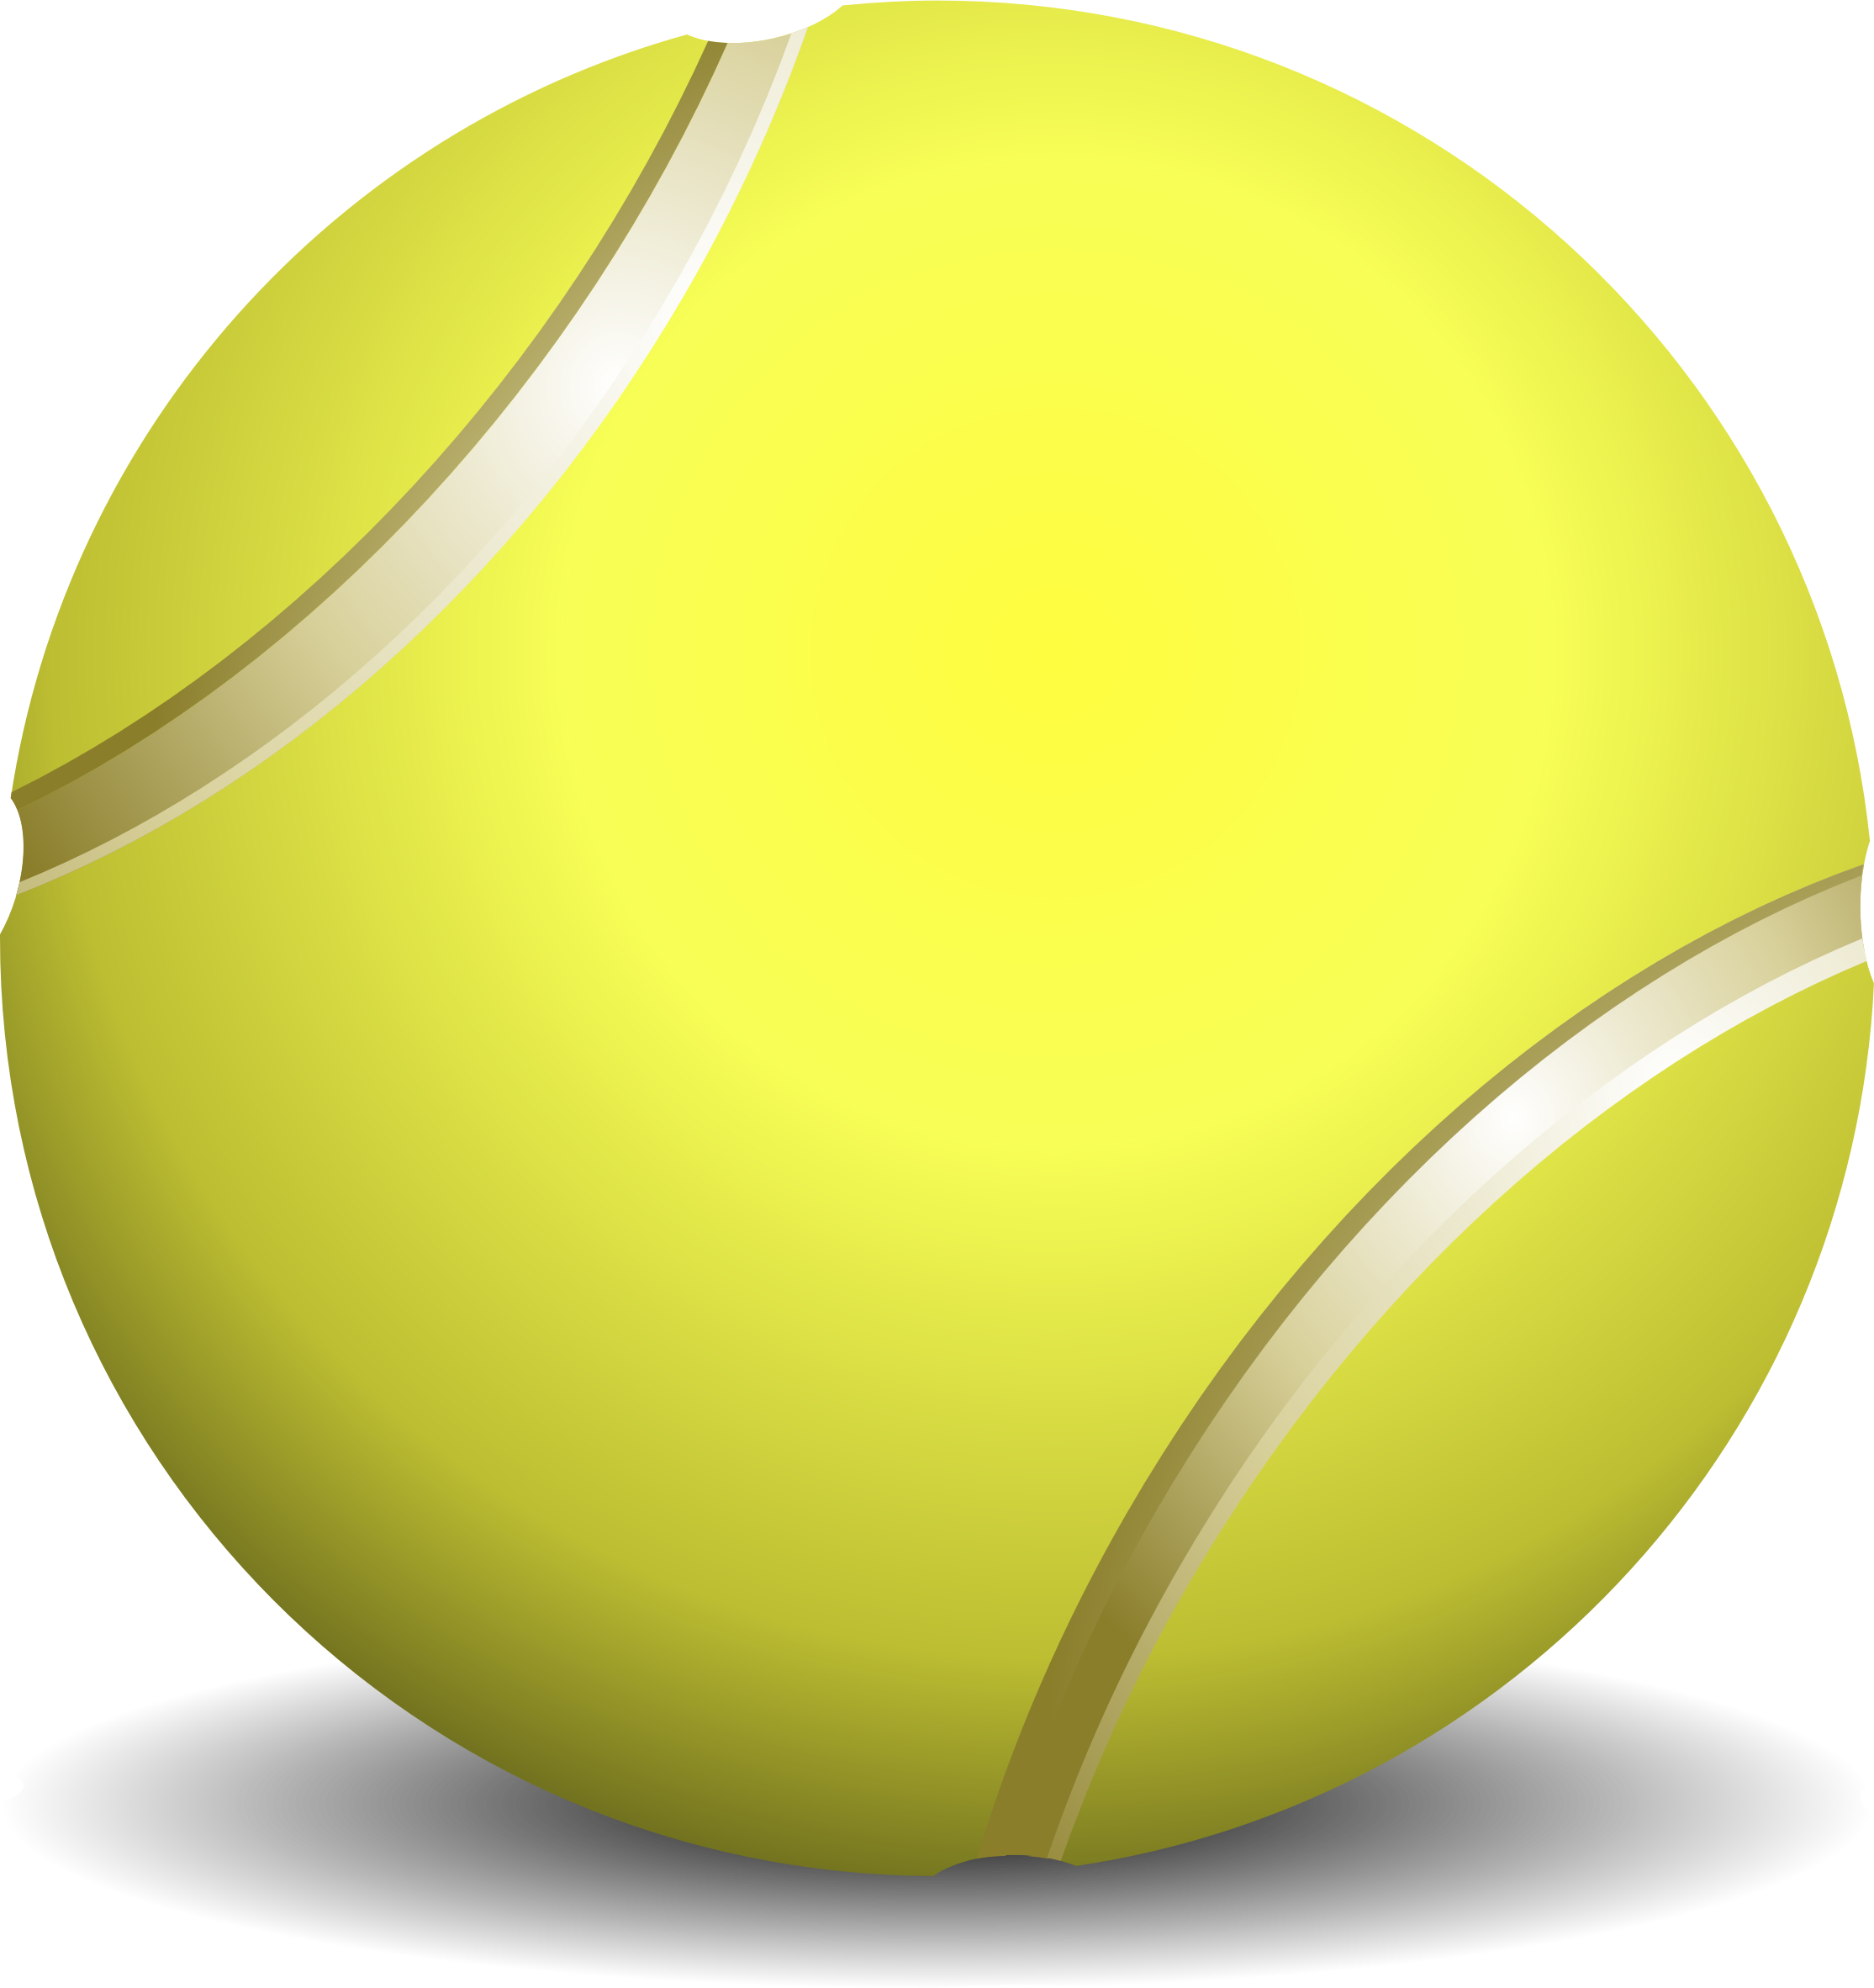 Tennis ball by Steren - ball,